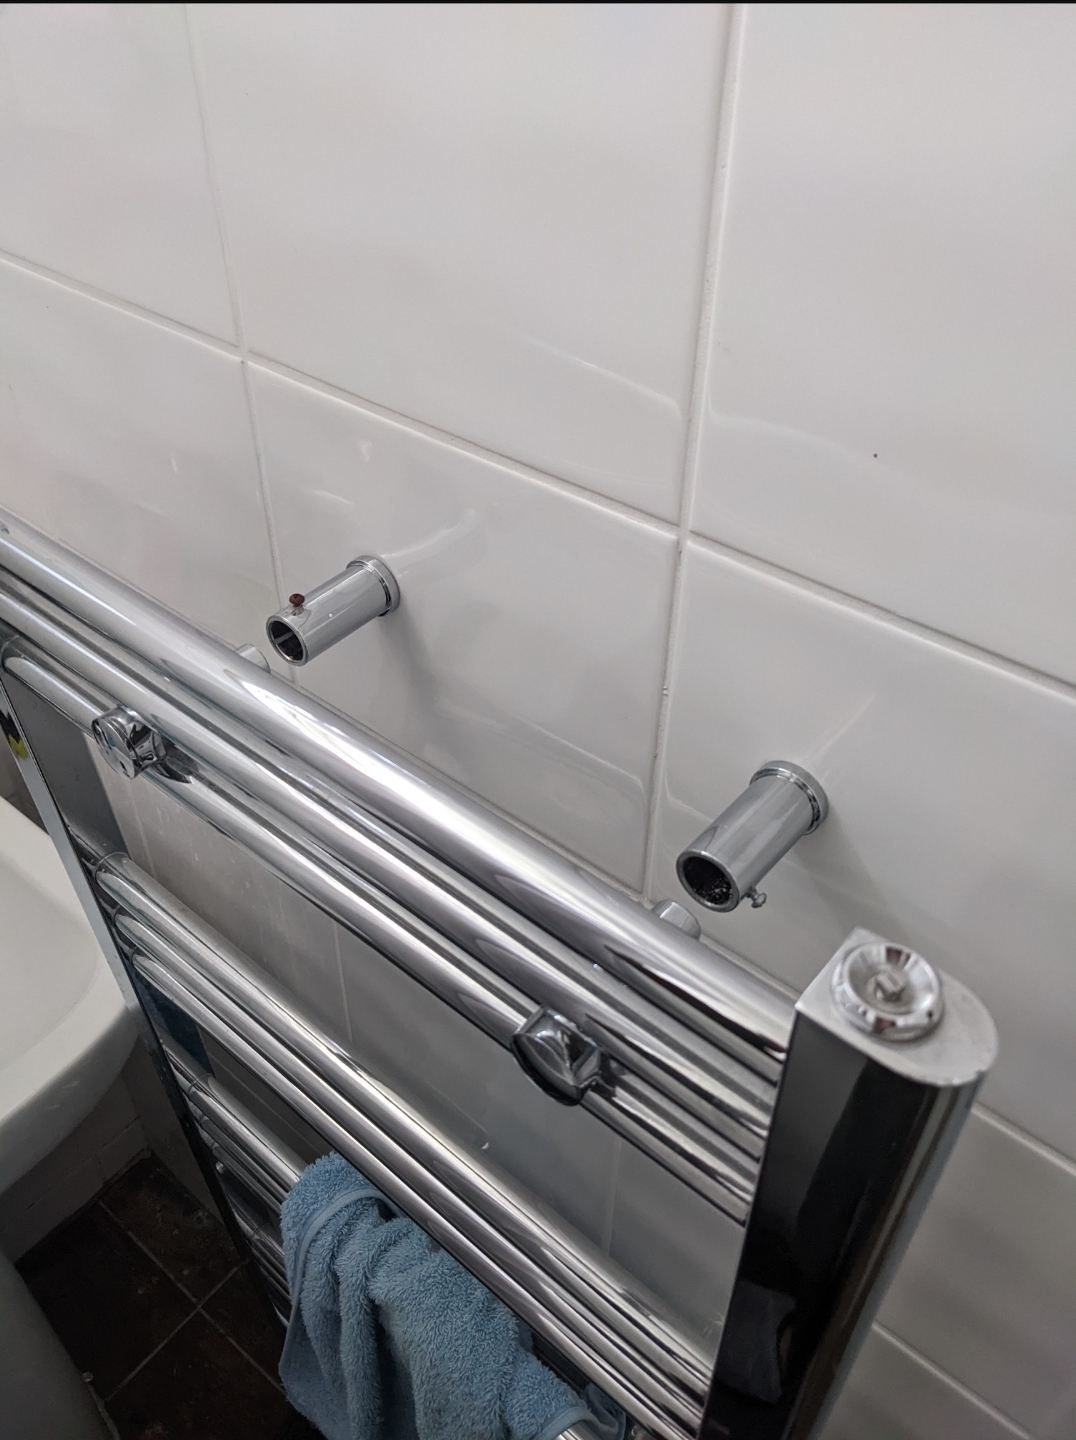 Damaged towel rail